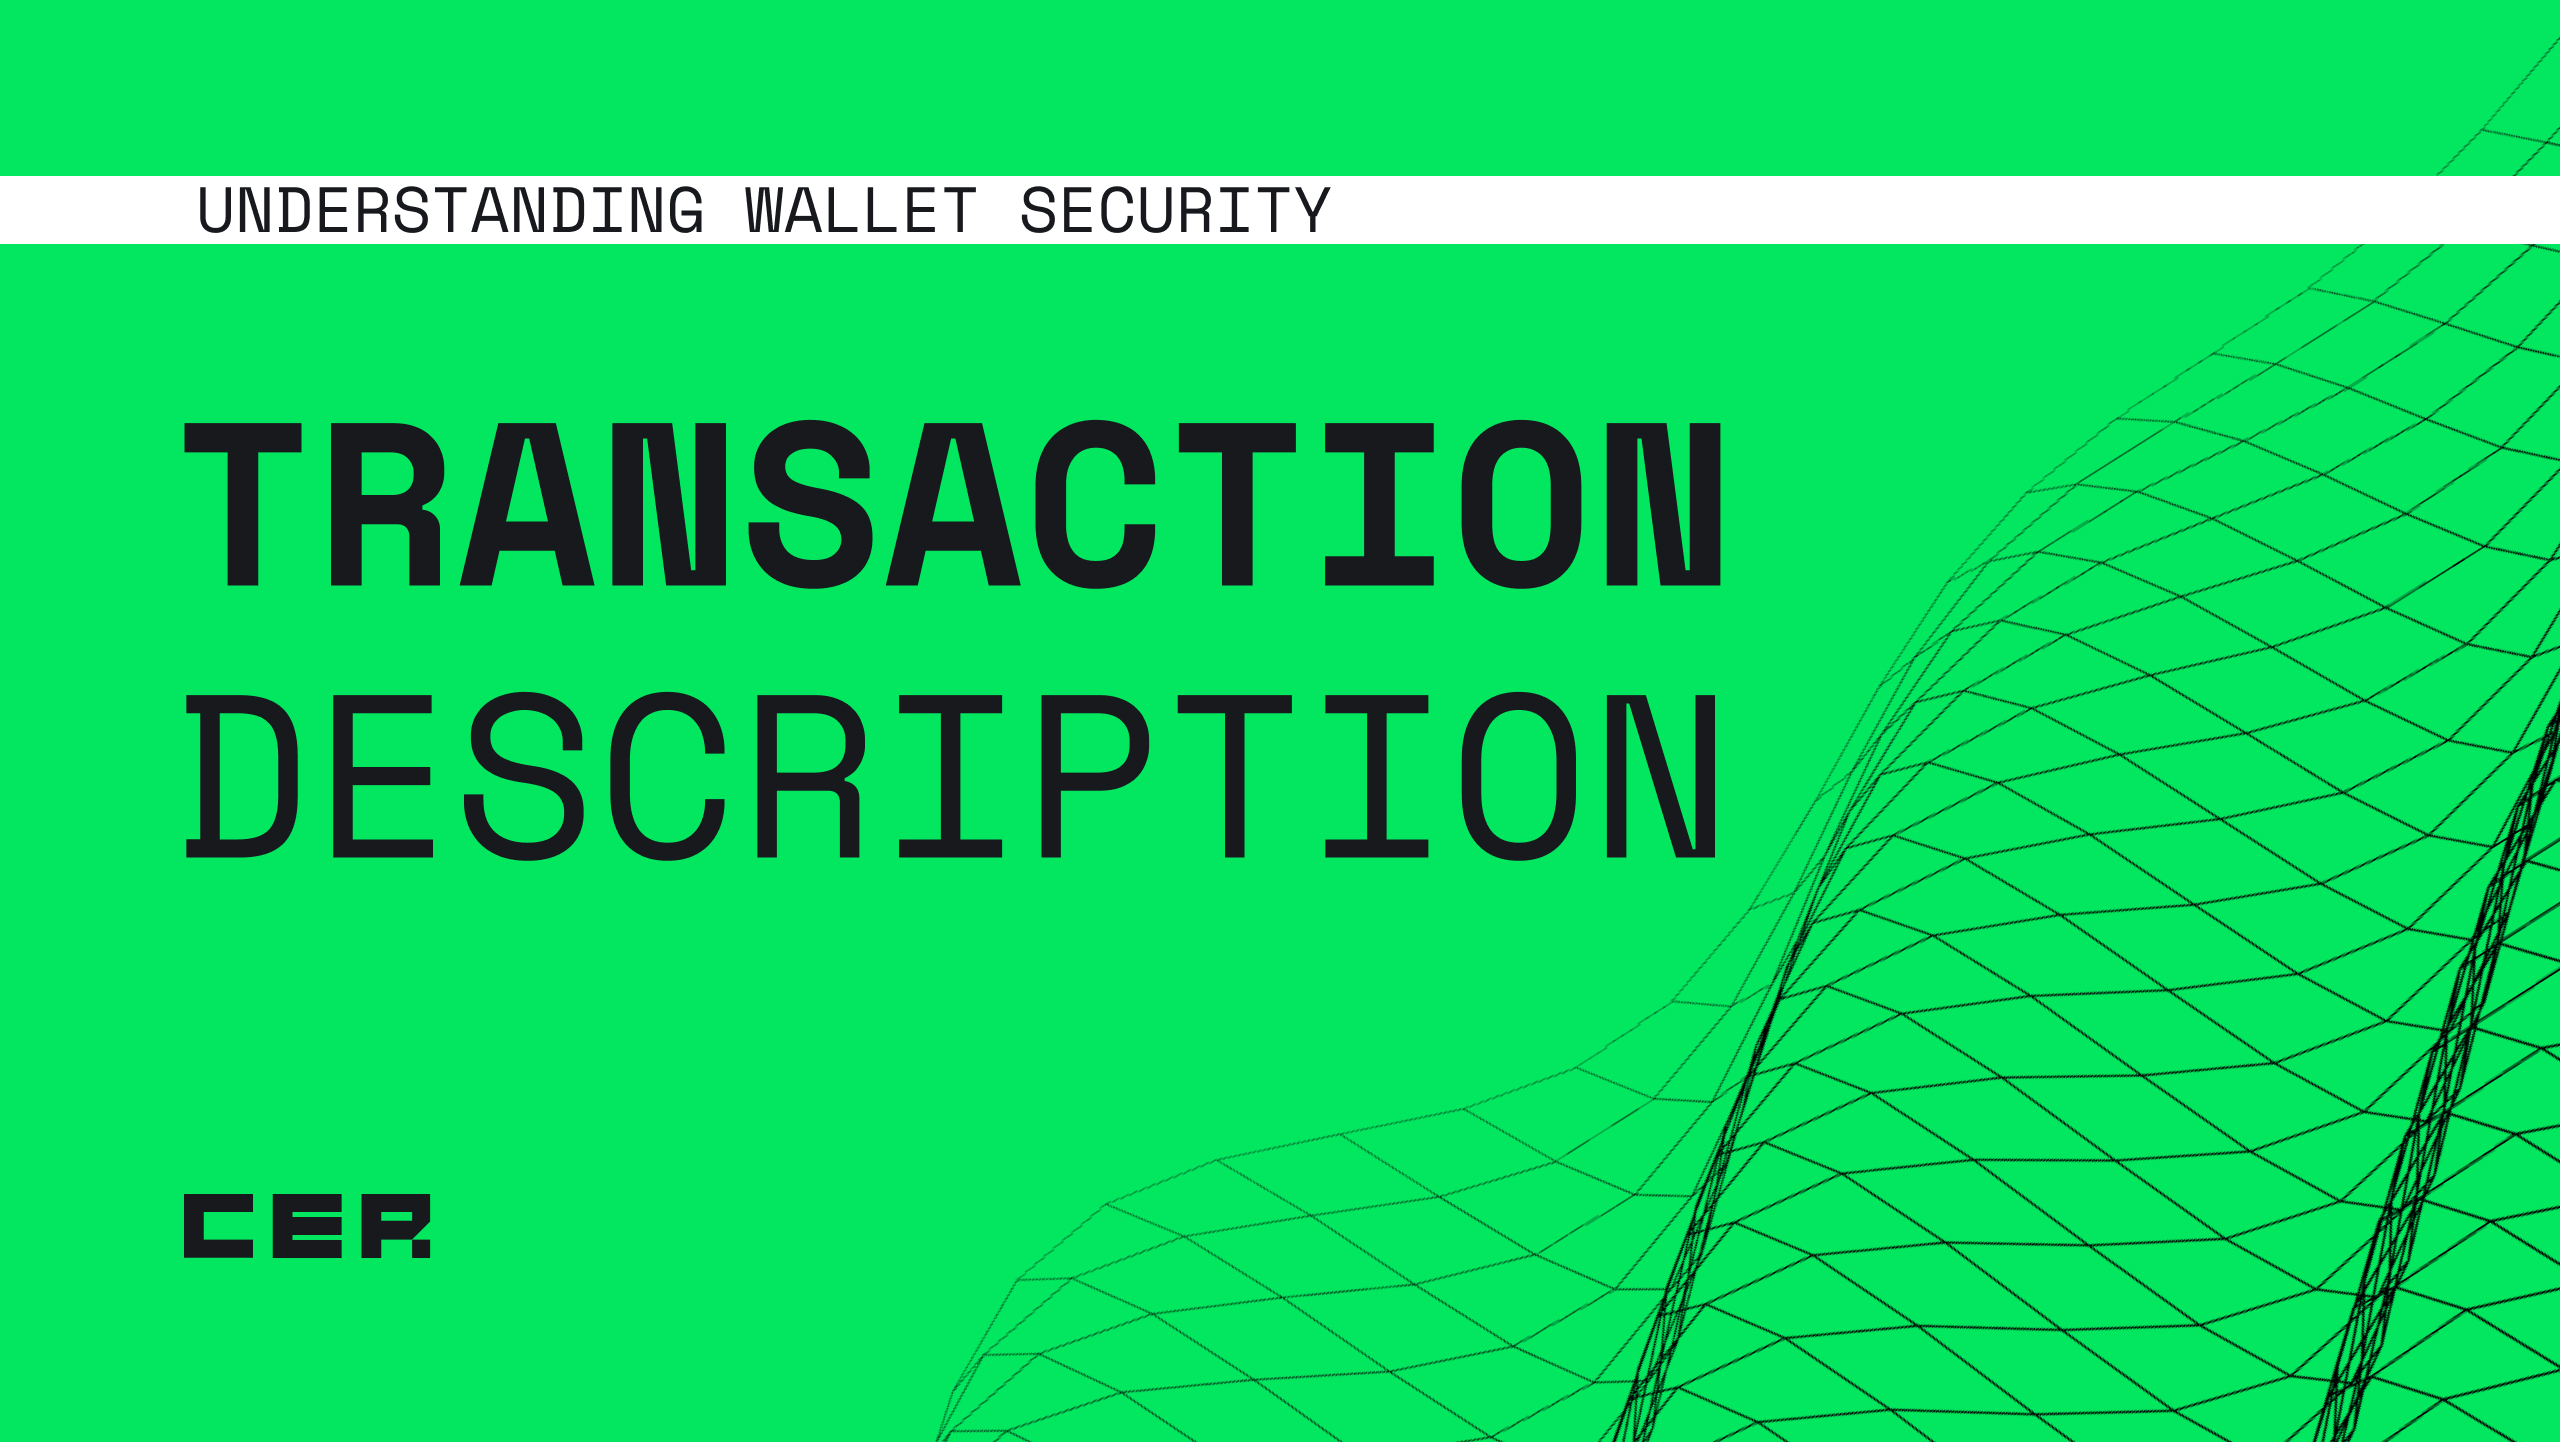 Understanding wallet security: Transaction descriptionimage